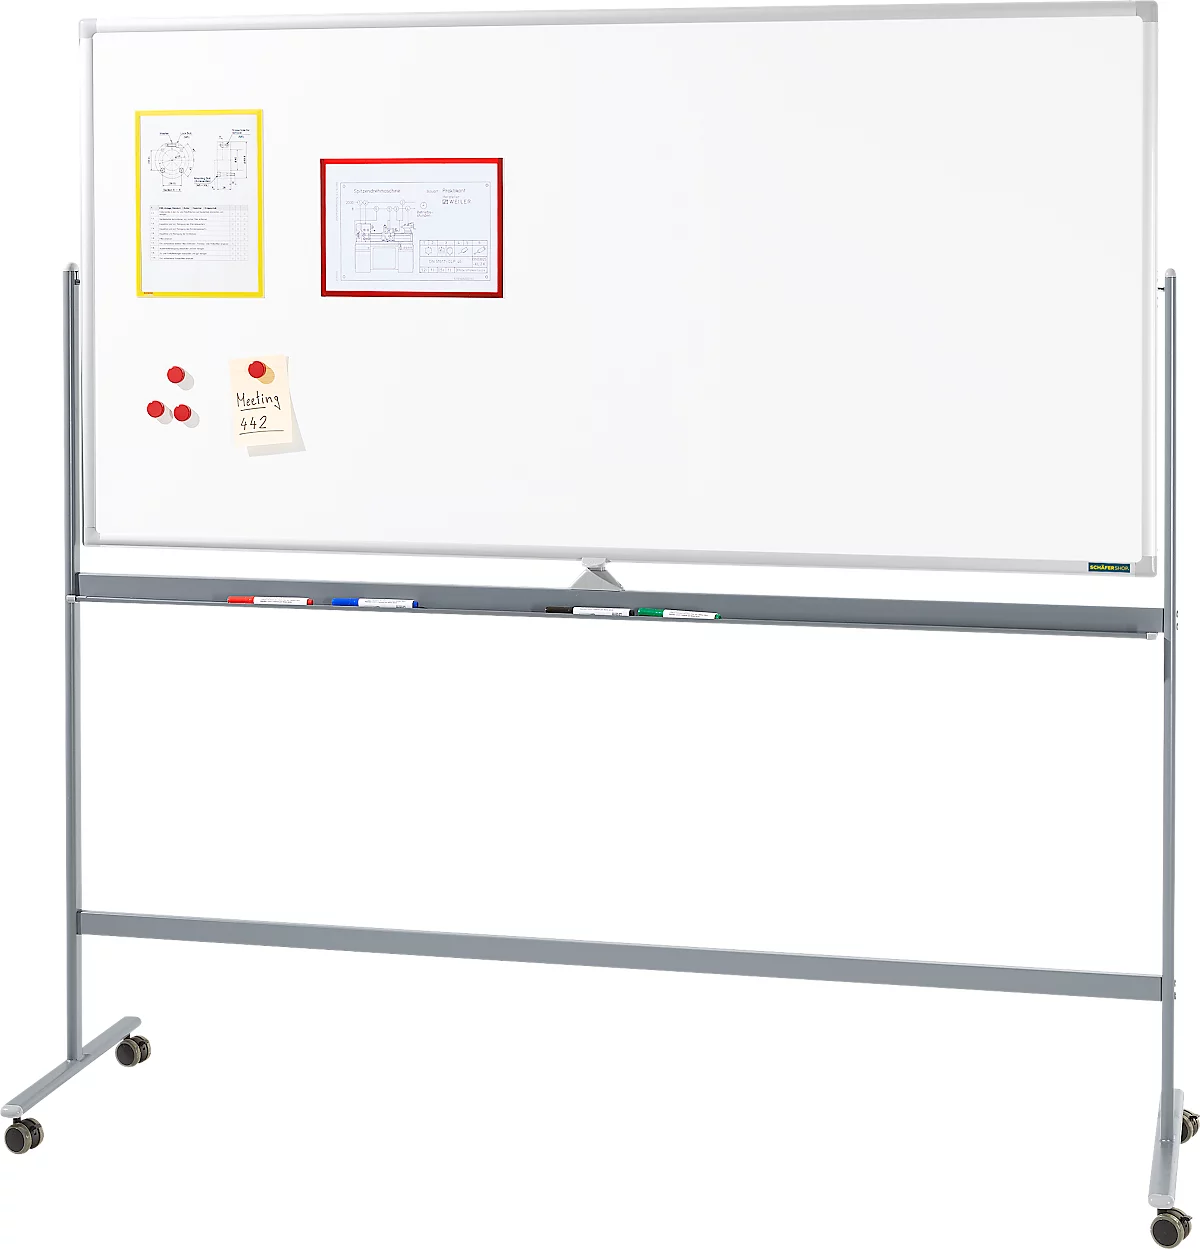 Schäfer Shop Select Verrijdbaar whiteboard - aan 2 zijden te gebruiken - wit gelakt - draaibaar bord - B 1800 x H 1900 mm